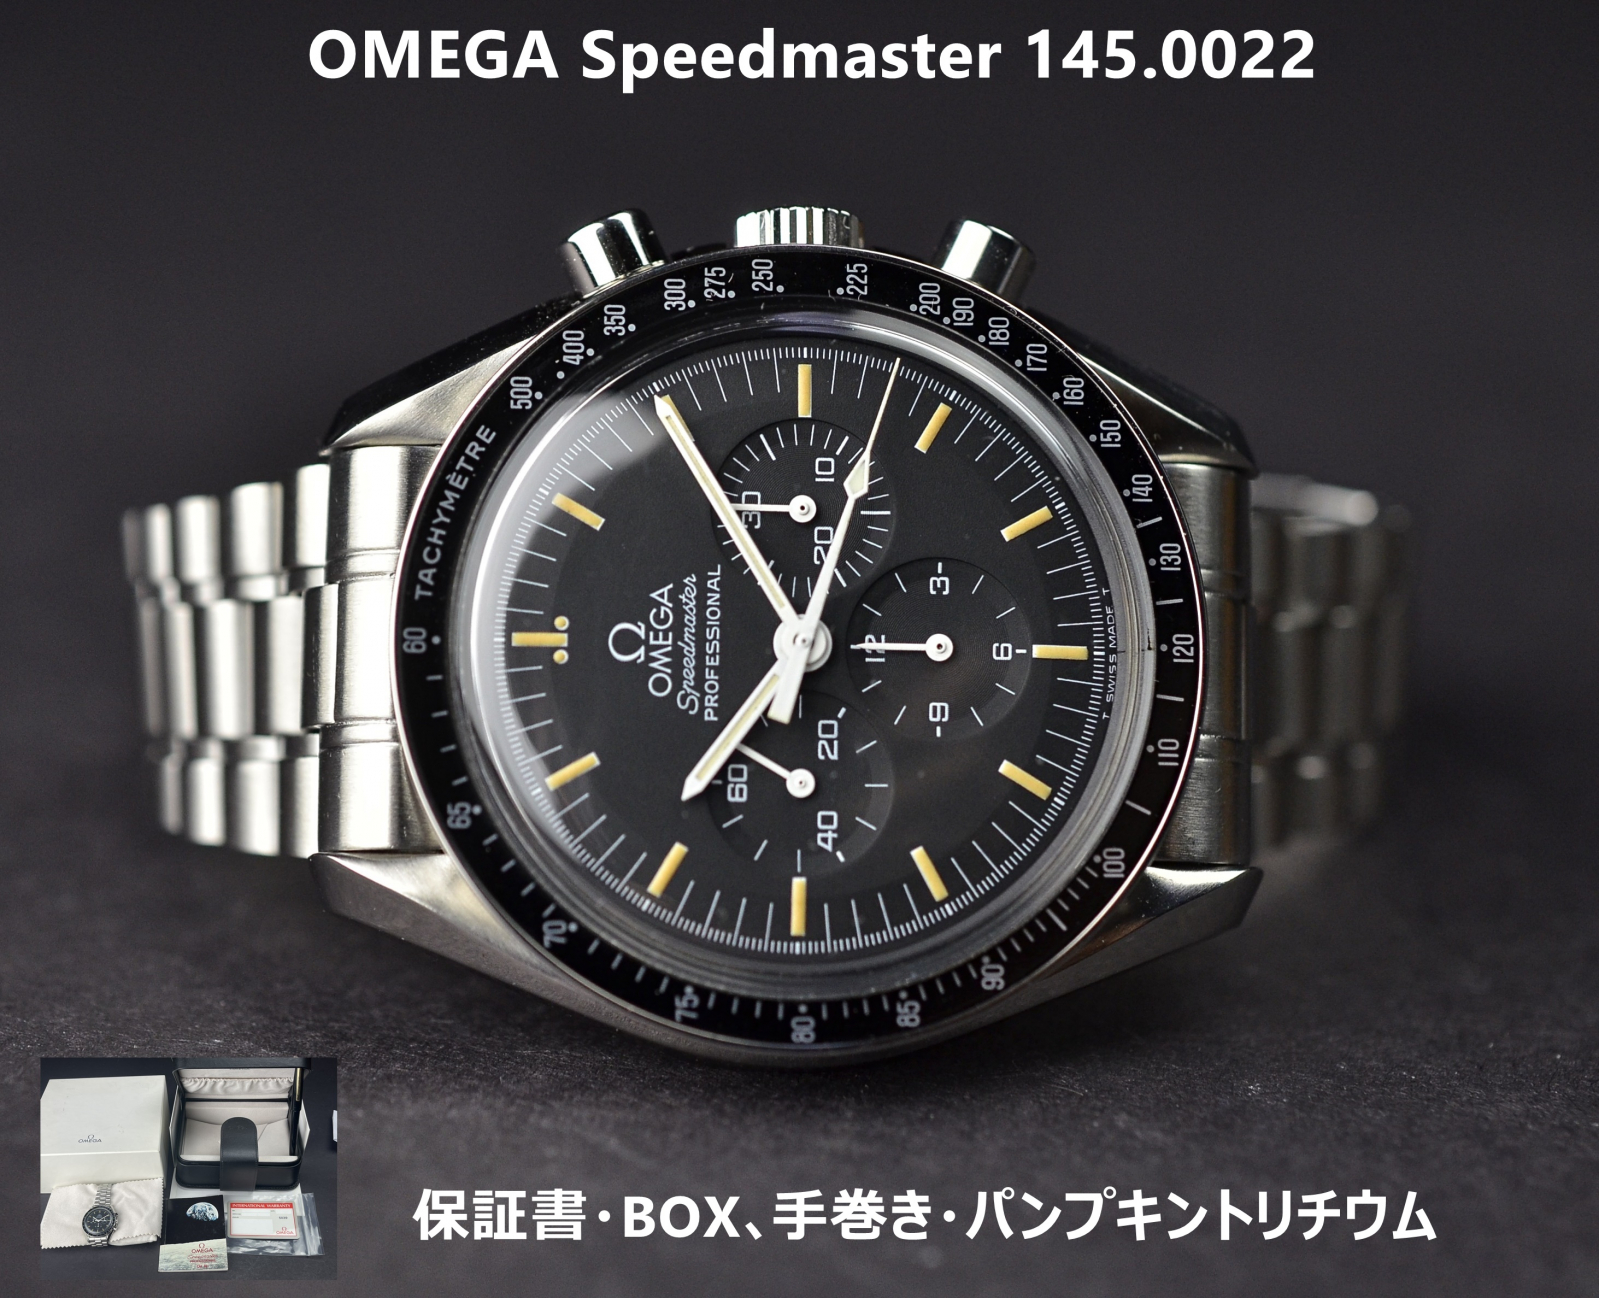 トケマー:オメガ スピードマスター 5th 145.0022 プロフェッショナル 